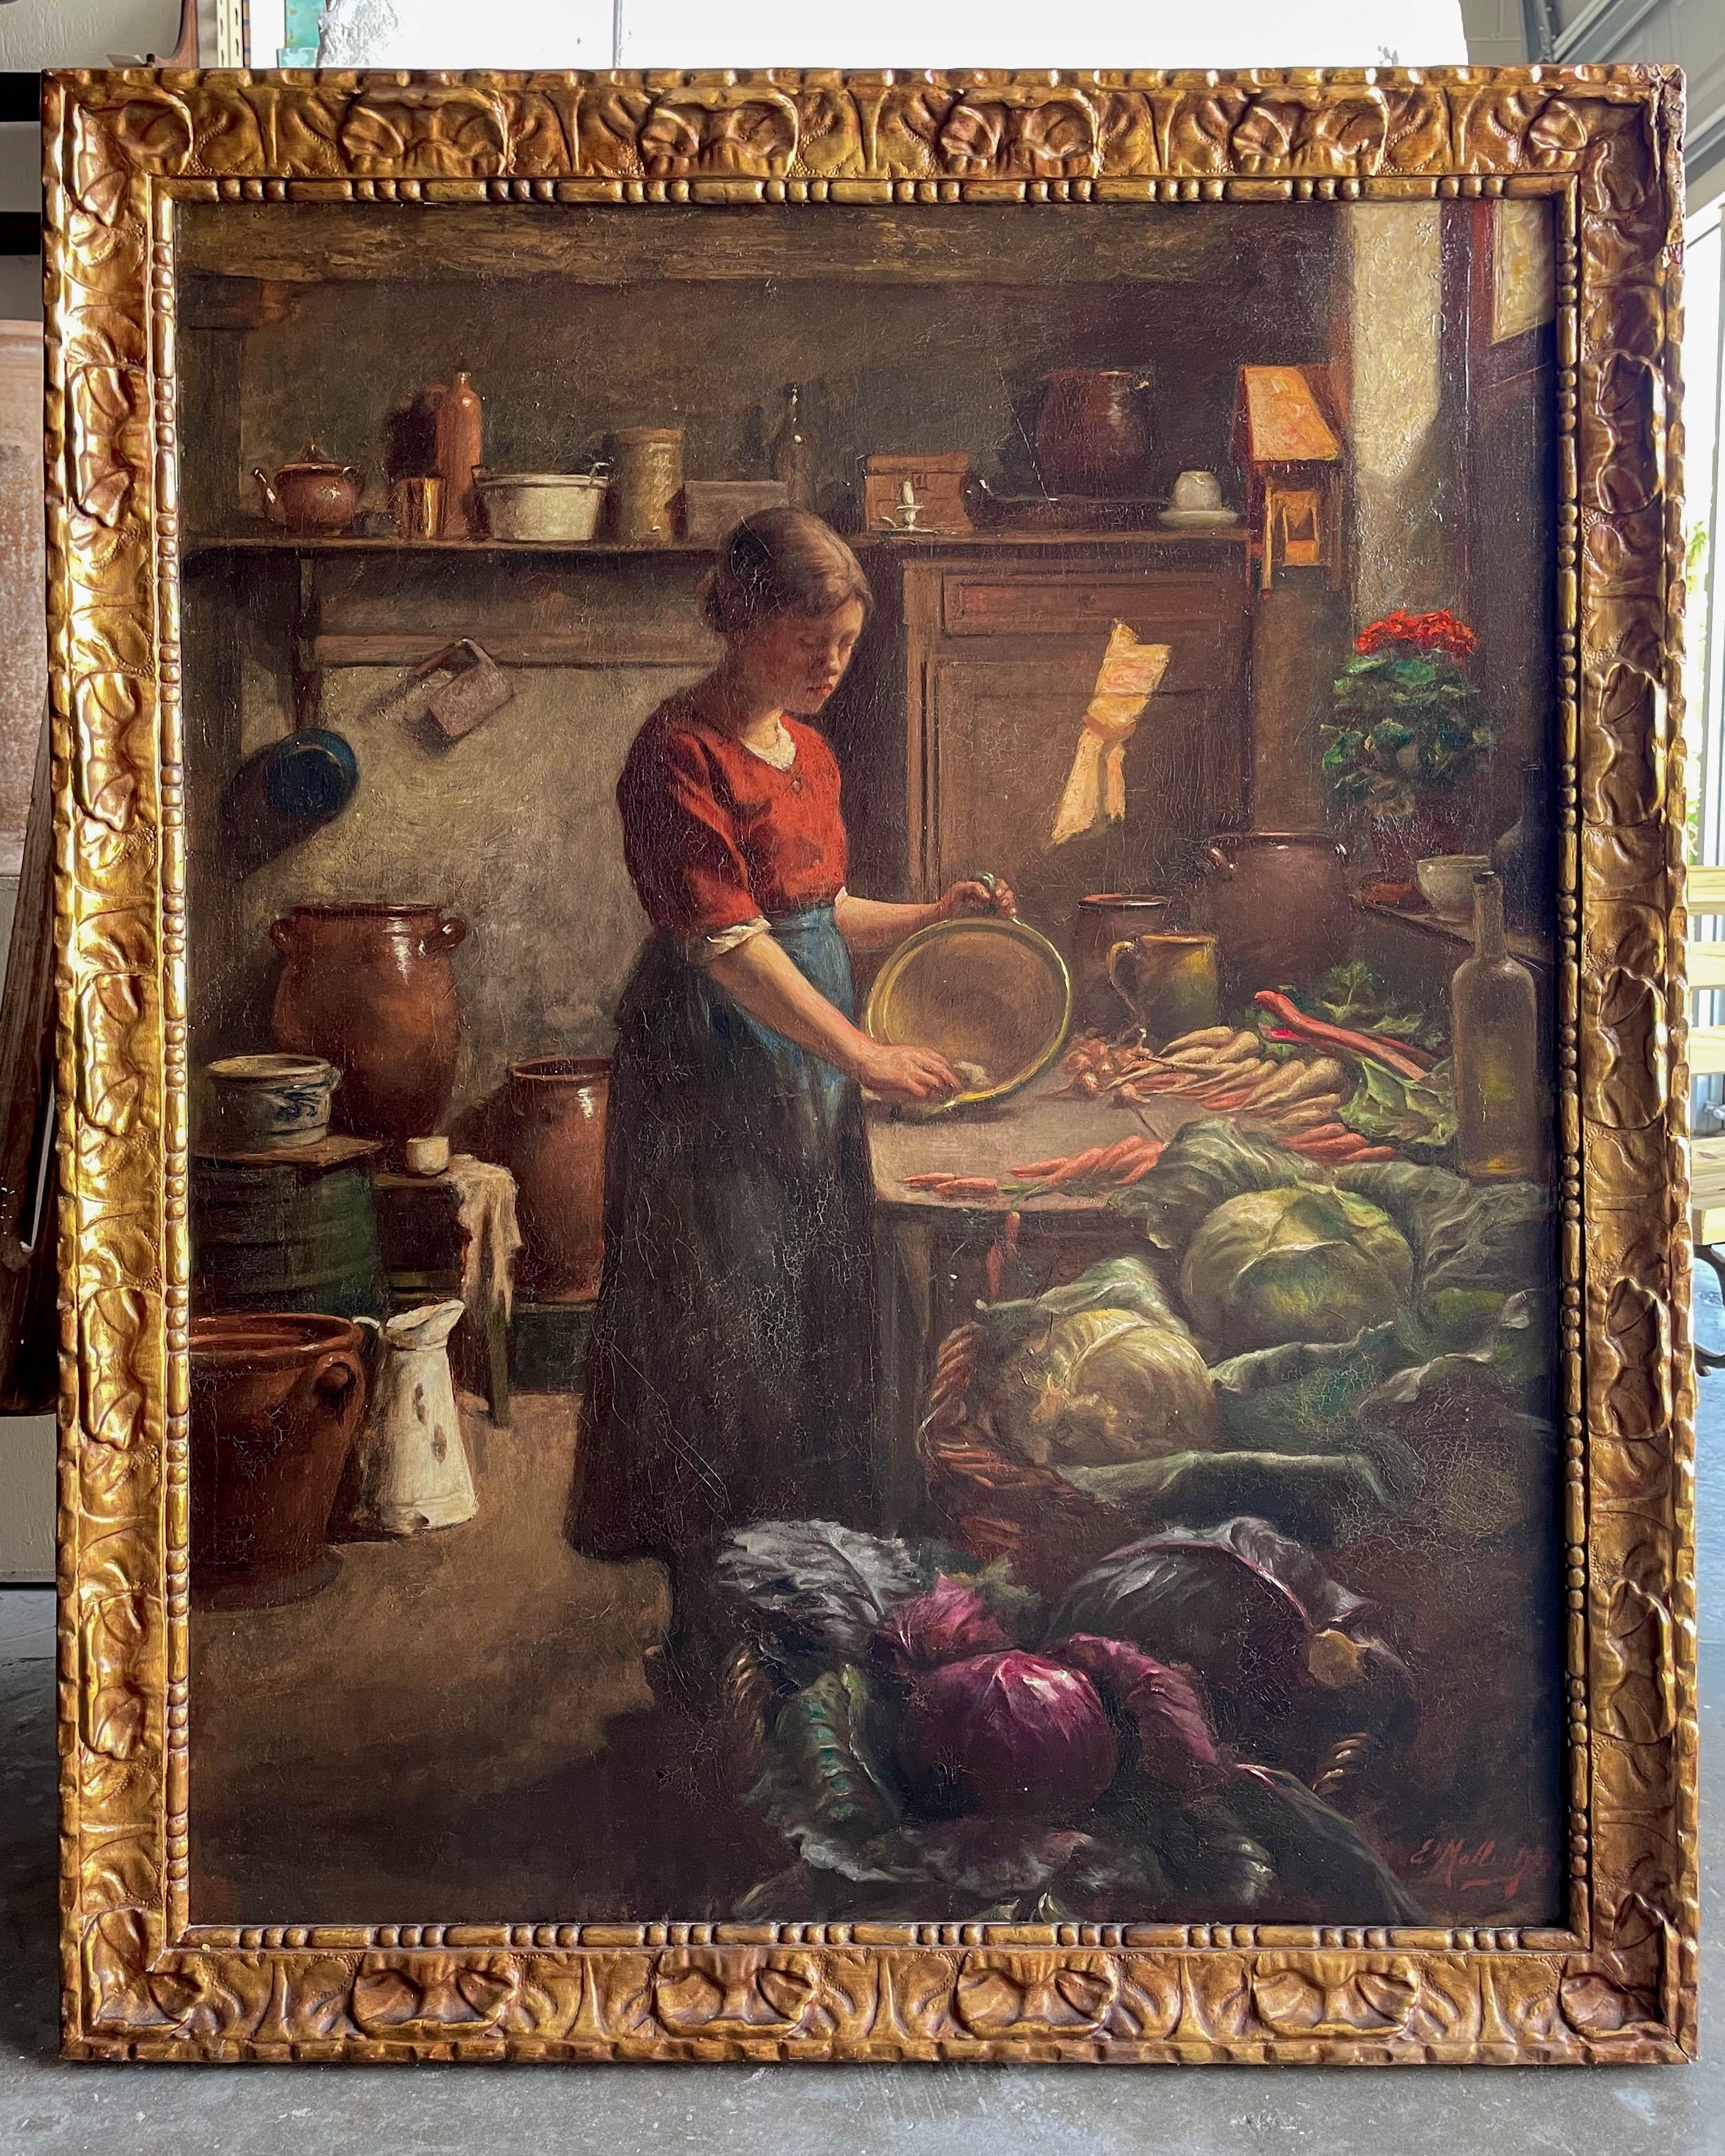 Une belle peinture de genre du XIXe siècle dans le style hollandais, clairement influencée par Vermeer, avec la lumière qui pénètre par une fenêtre supérieure. Représentation d'une fille de cuisine préparant des légumes sur une table de ferme.